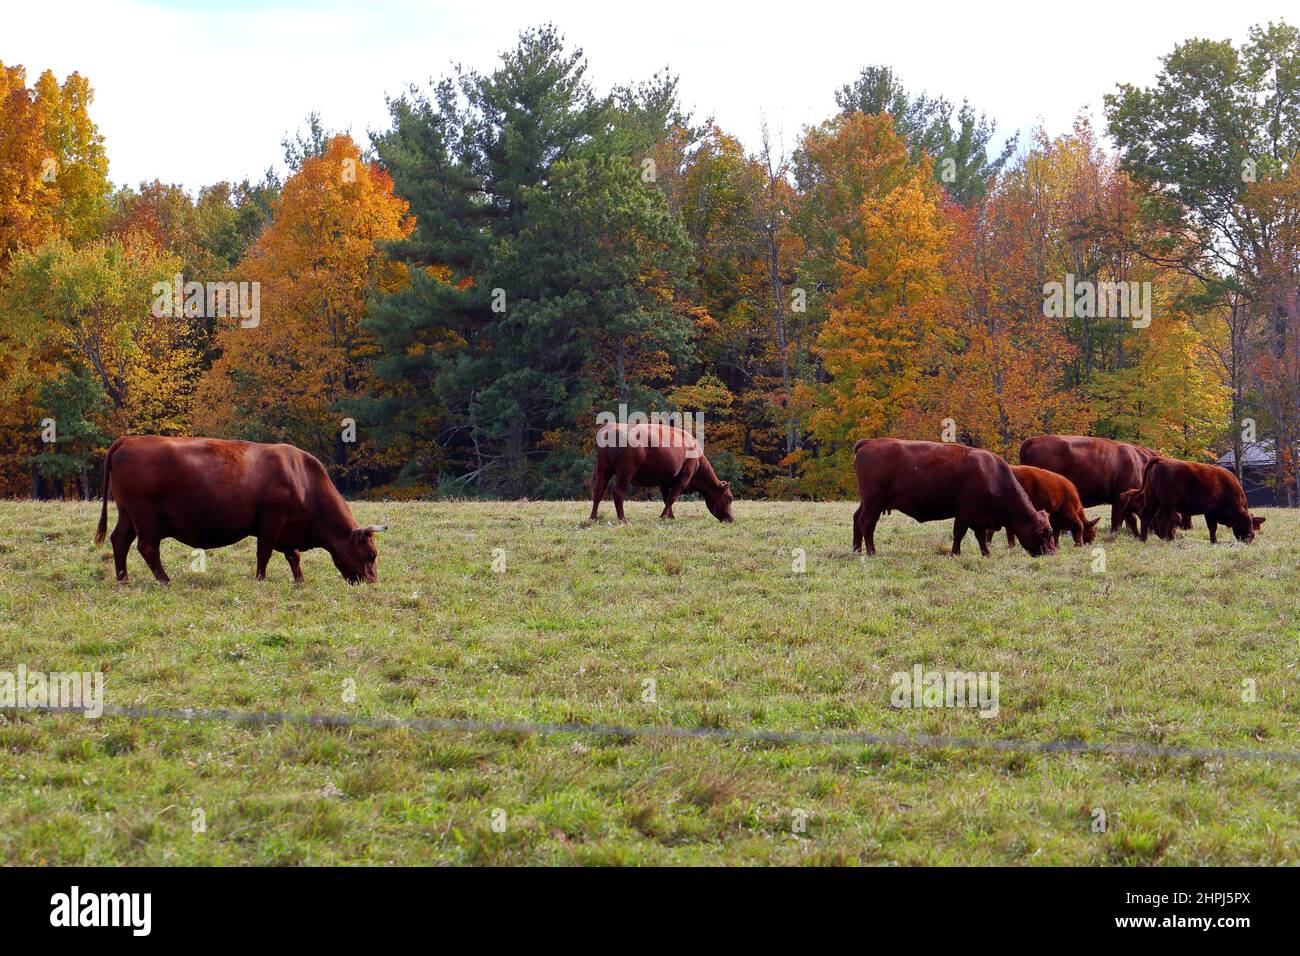 Vaches de Devon rouge pageant sur l'herbe contre un arrière-plan de feuillage d'automne dans le Mid-Hudson Valley de New York. Pâturage élevage de bétail Banque D'Images